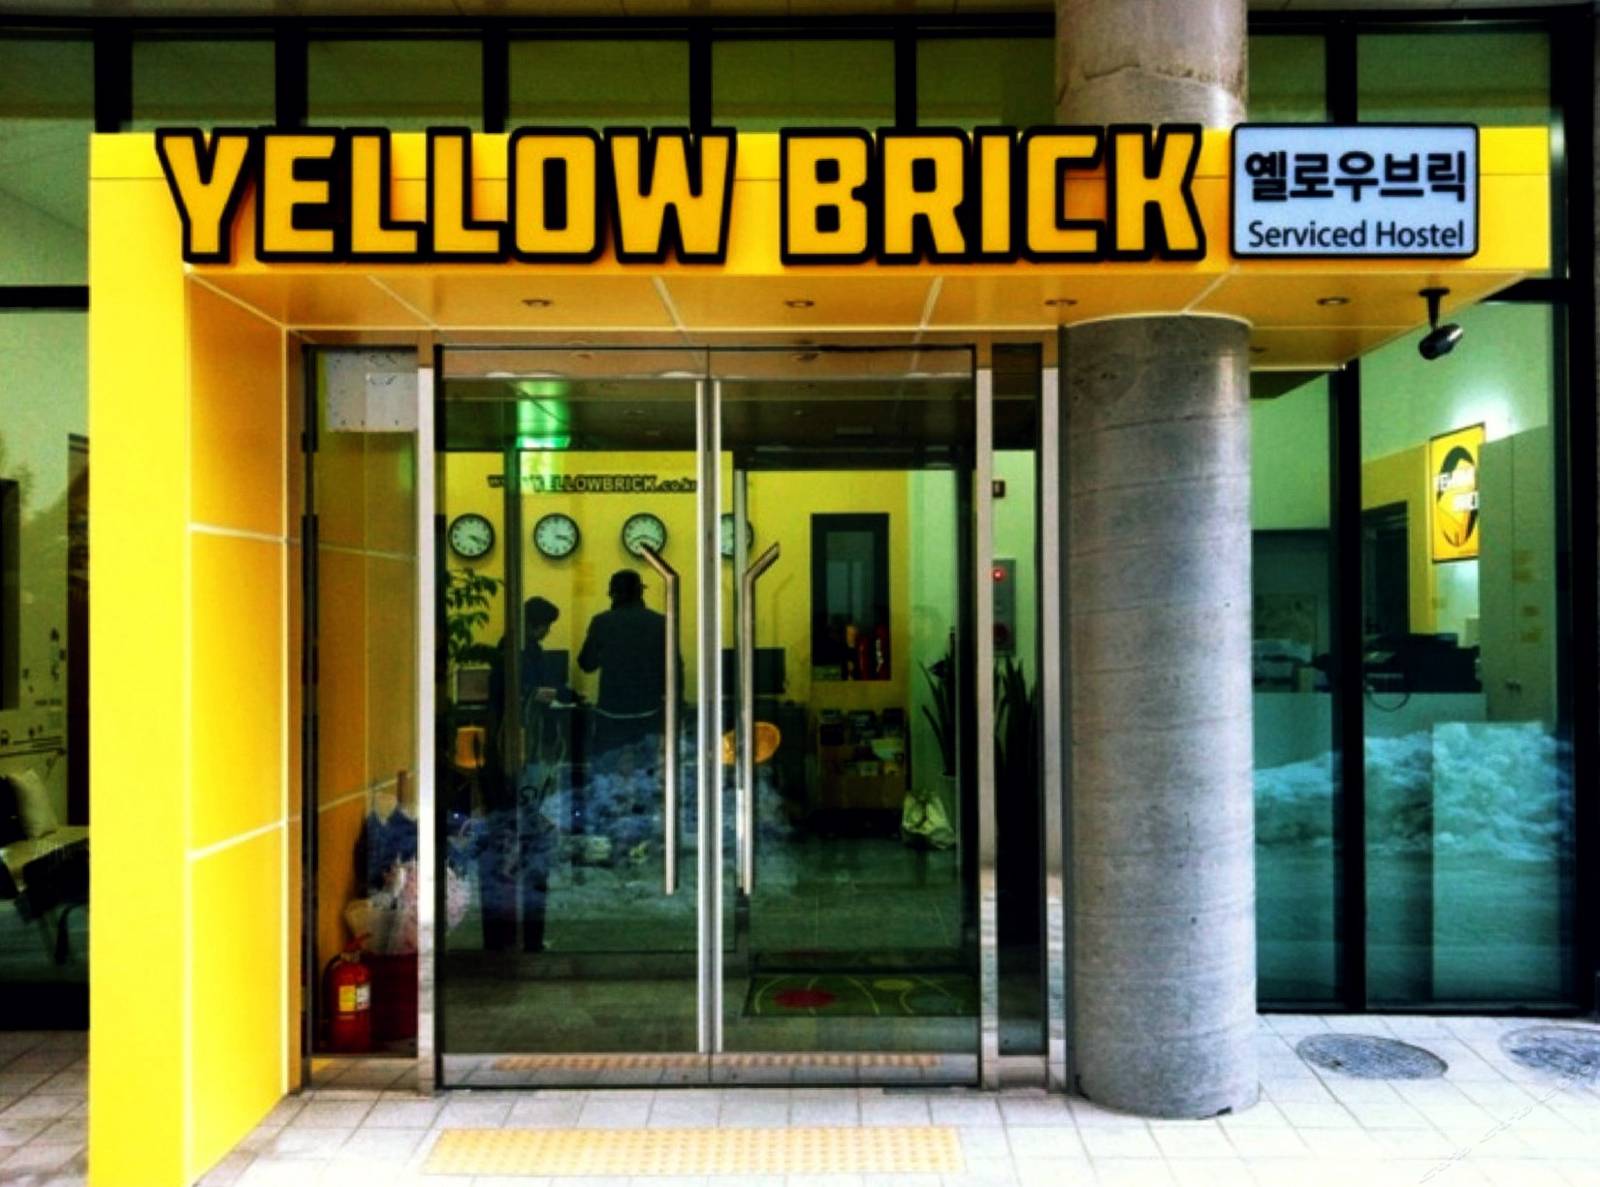 首尔黄色布里克1号酒店